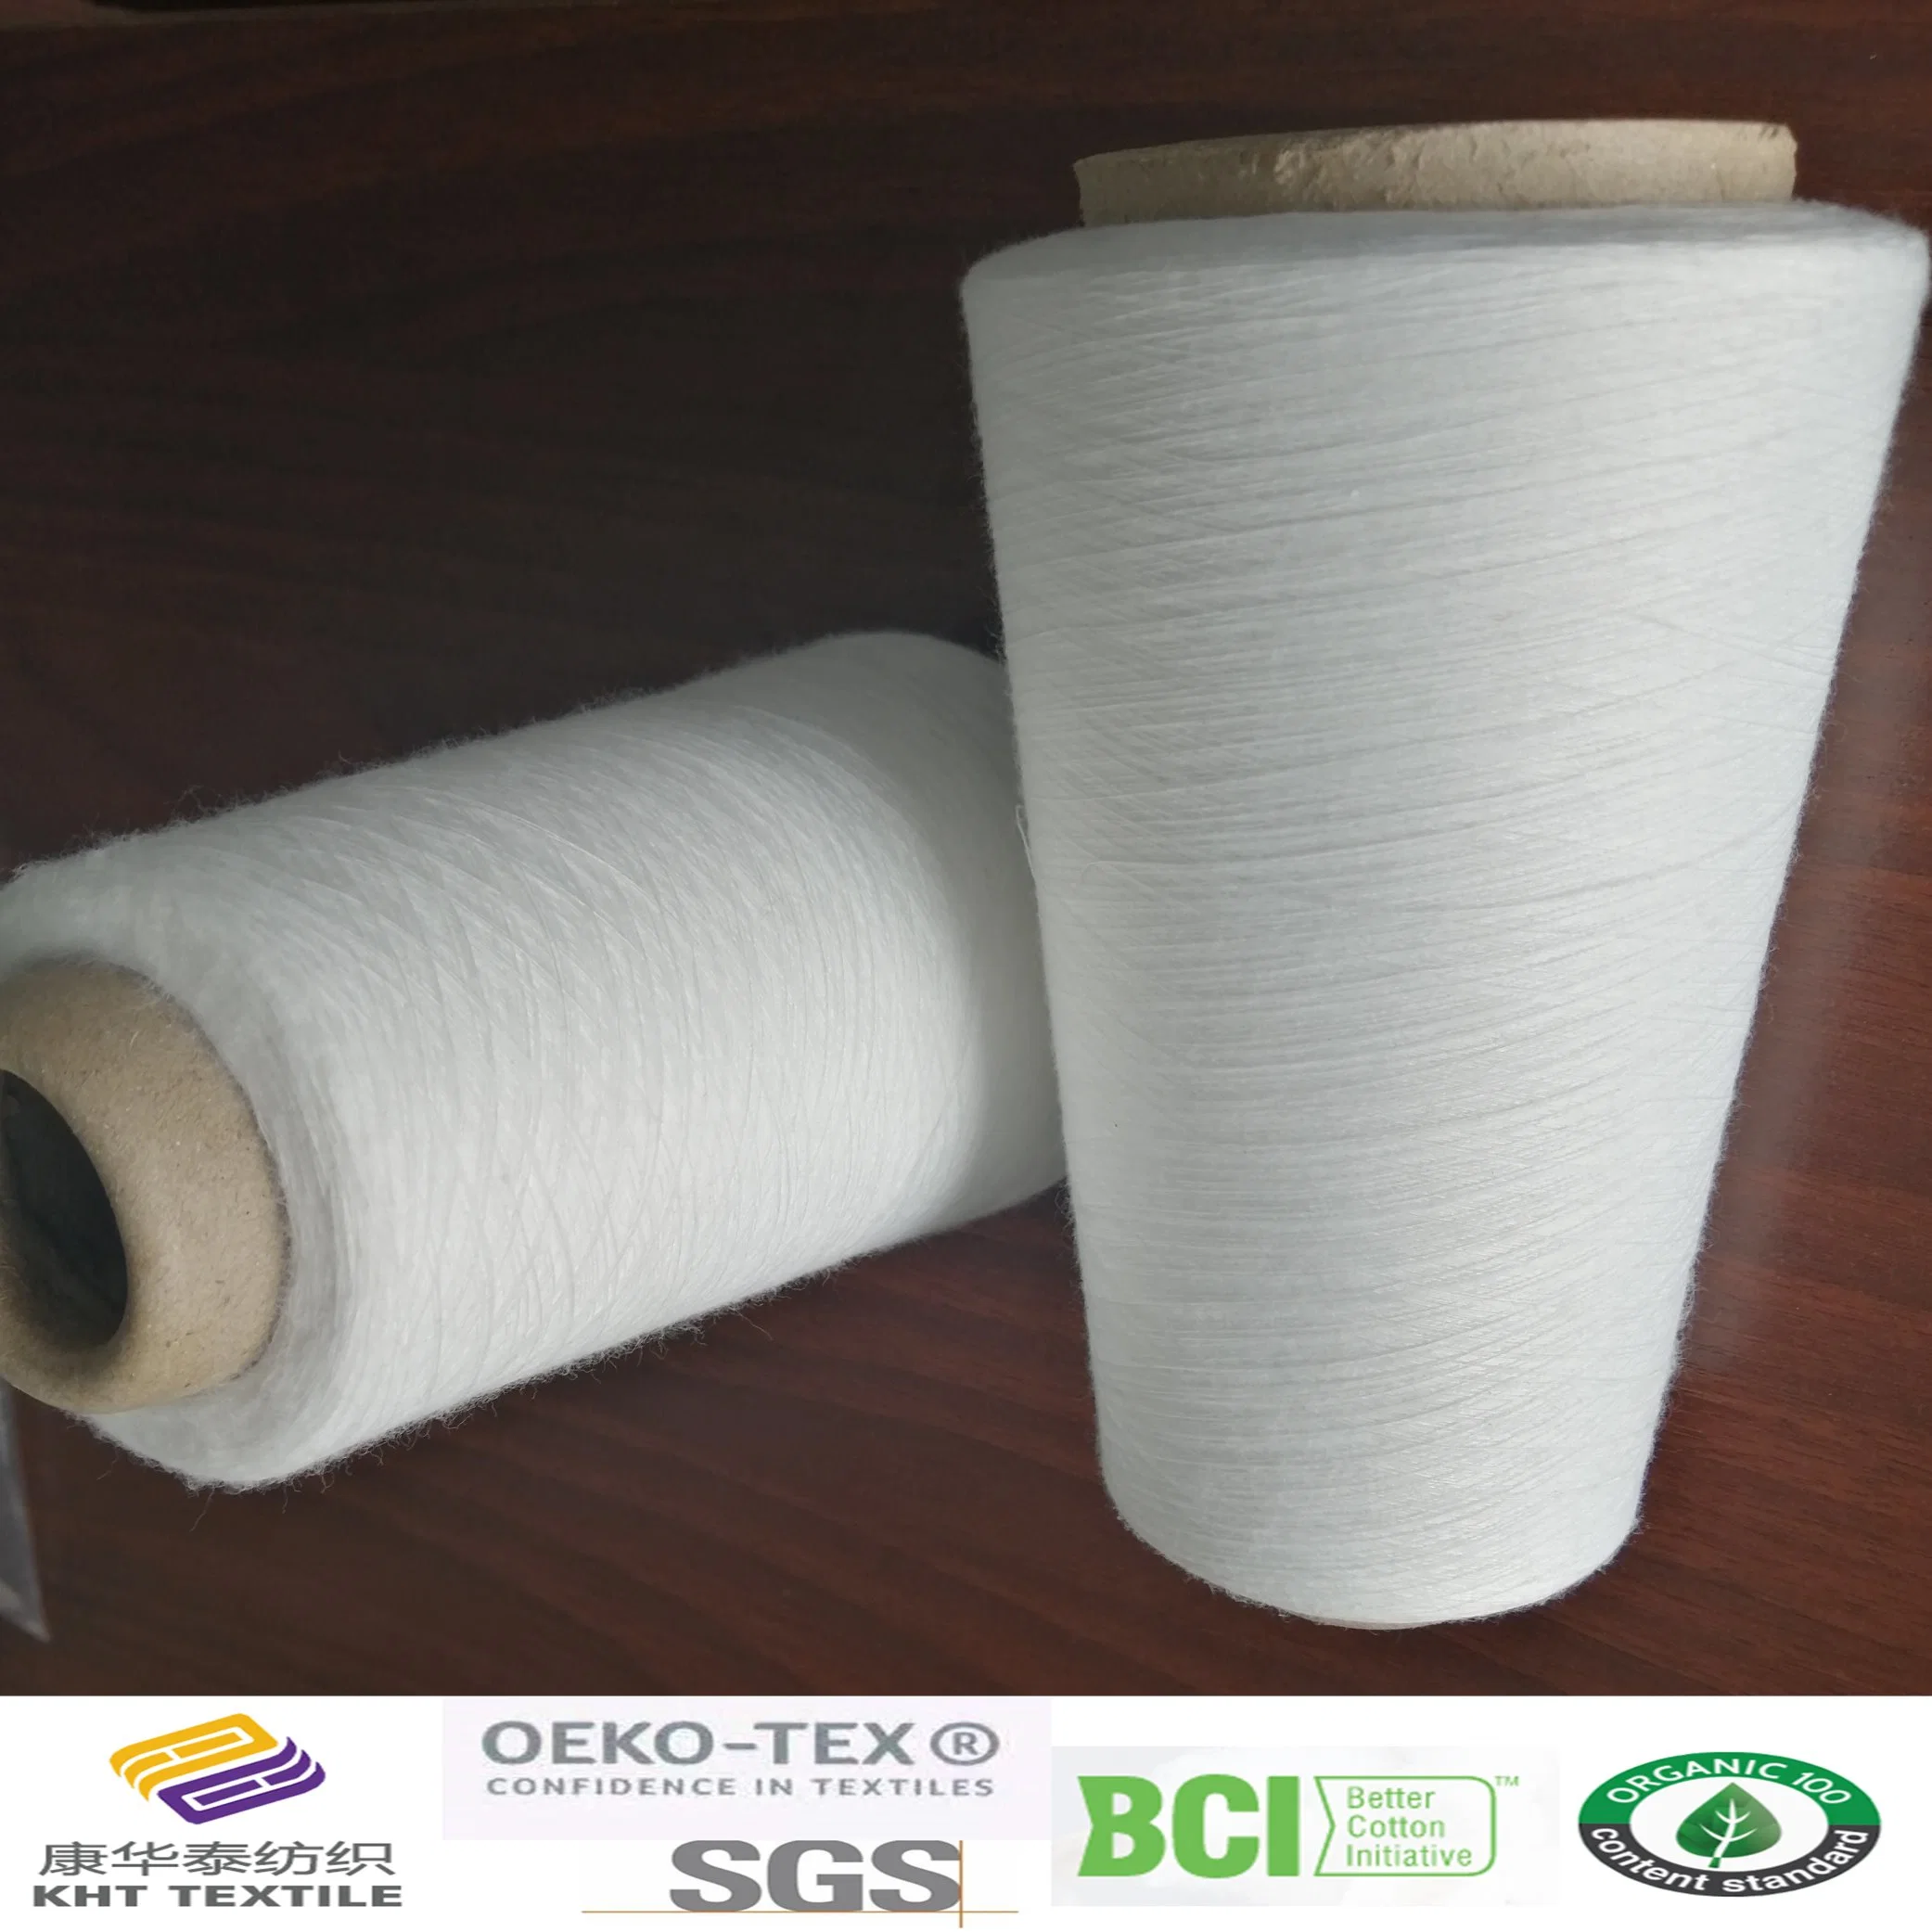 Fios de algodão orgânico/ reciclado Kht Produtos Têxteis China Ne40S/2, 50s/2, 60s/2, 80s/2